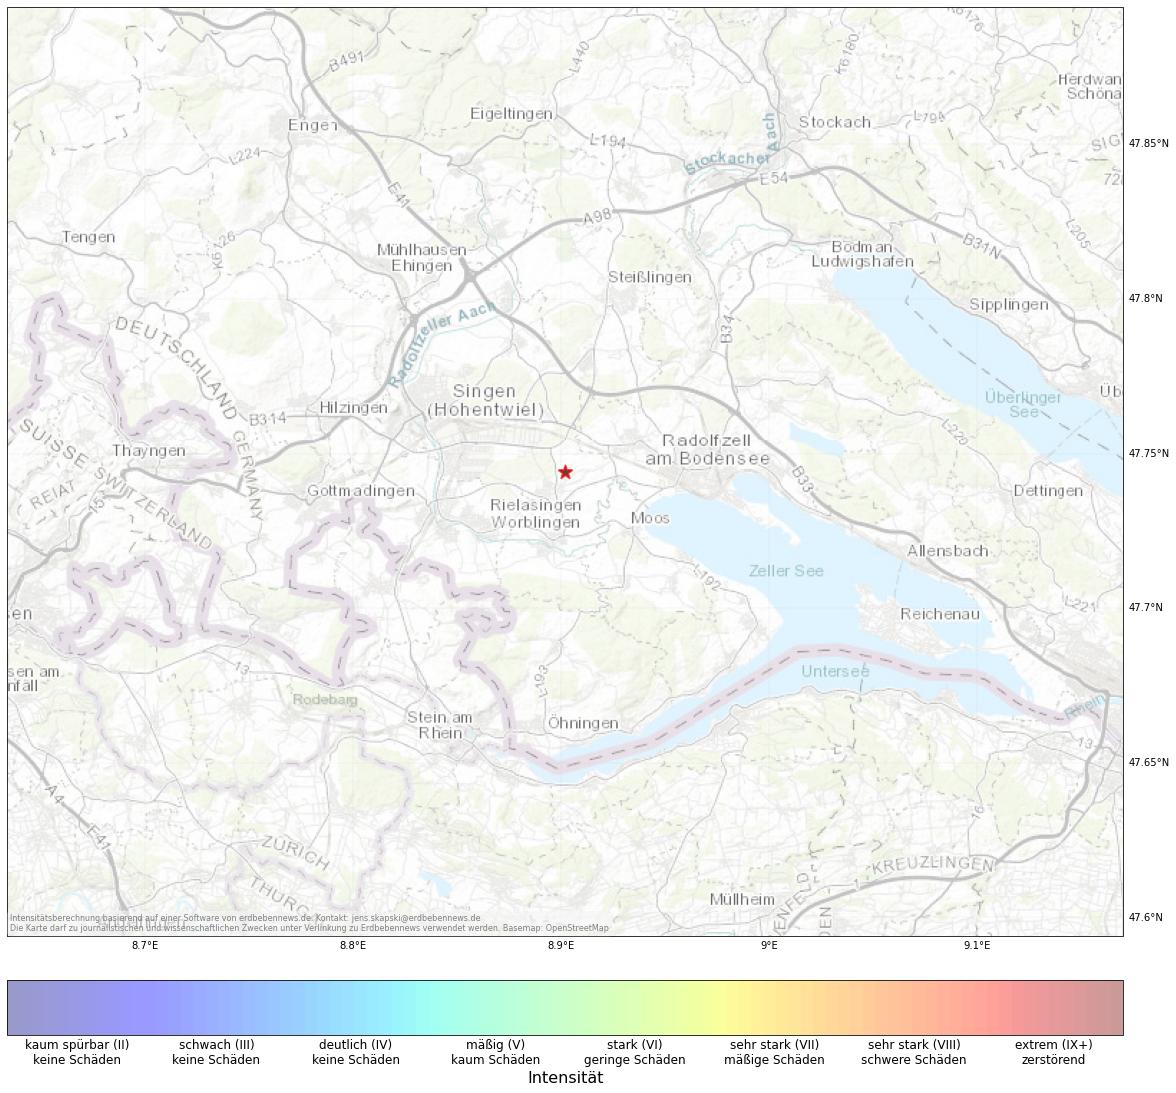 Berechnete Intensität (ShakeMap) des Erdbebens der Stärke 1.8 am 02. November, 07:37 in Schweiz